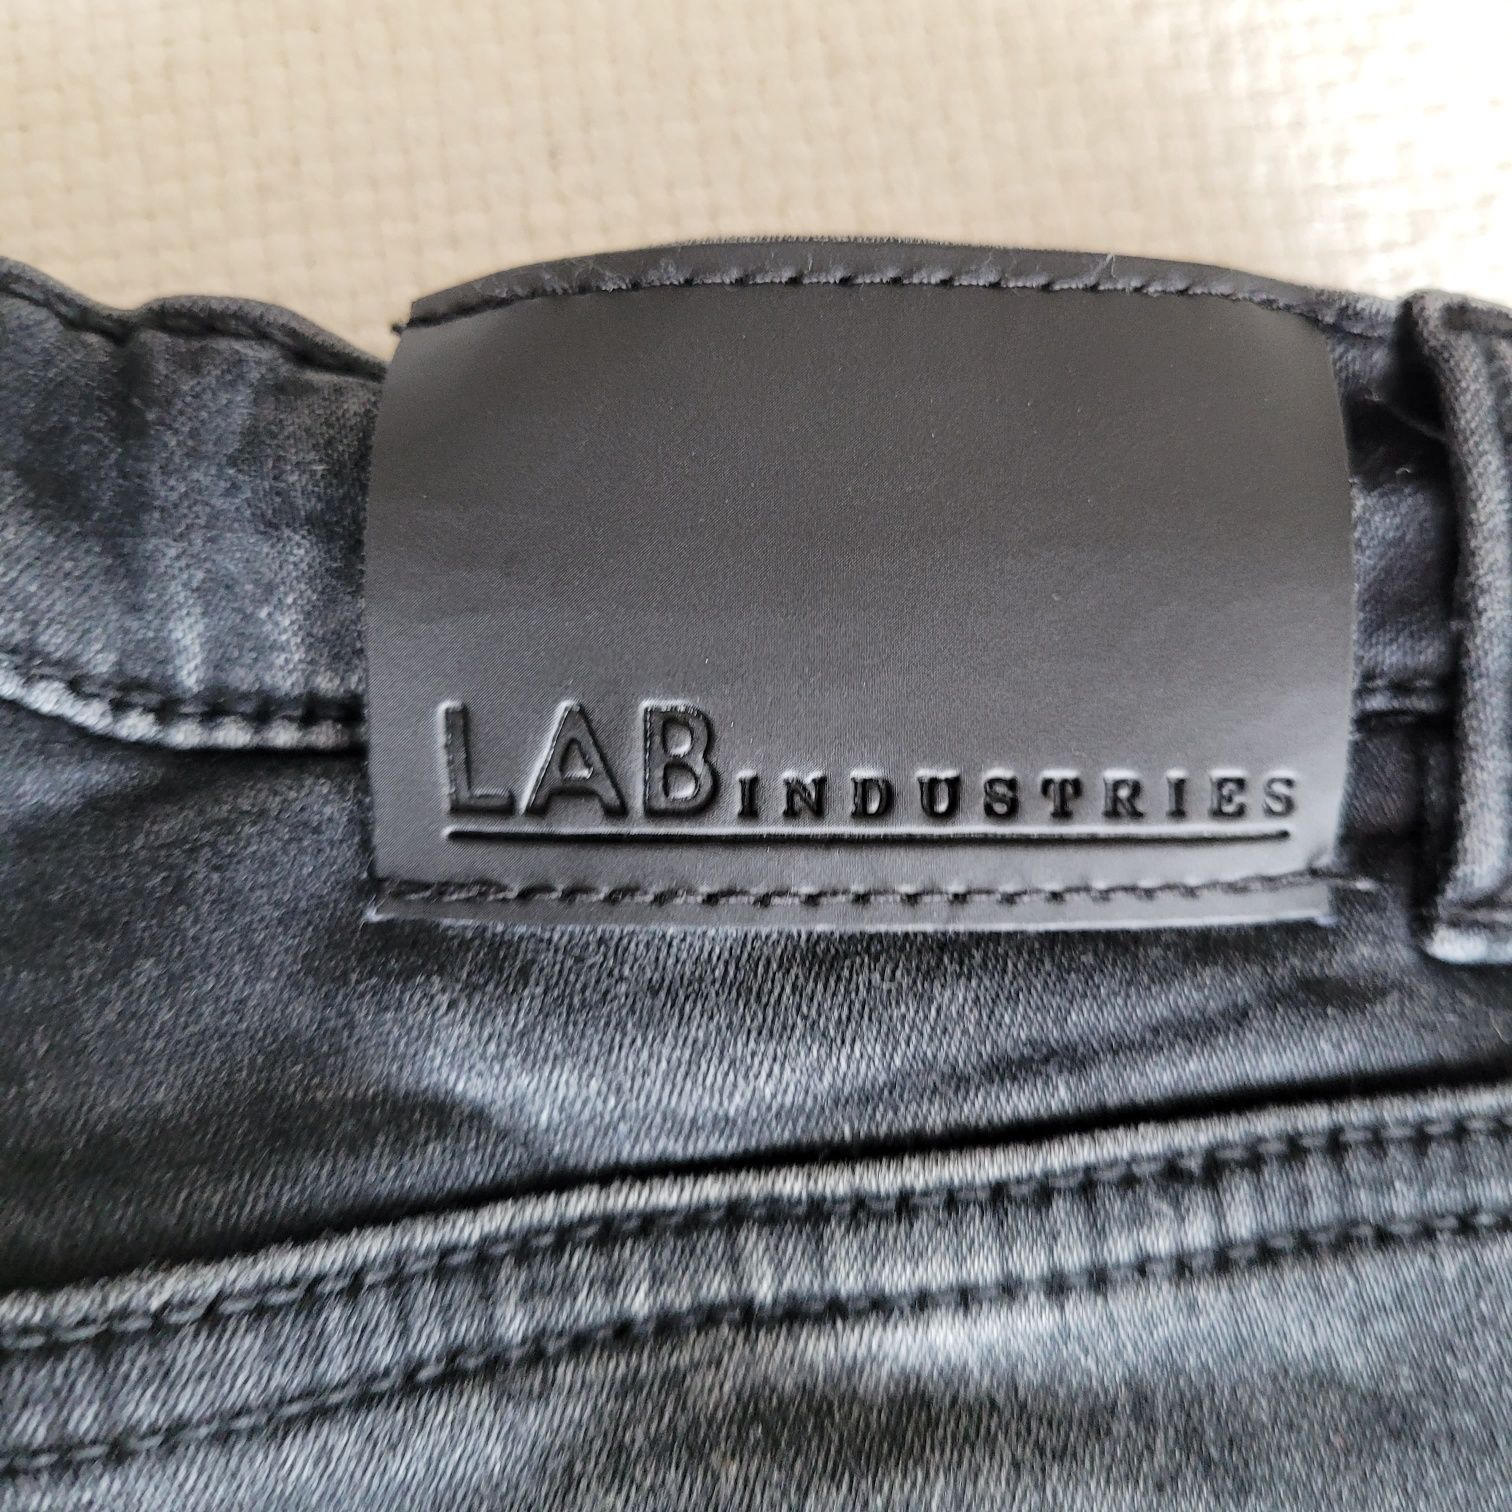 Spodnie jeans skinny lab industries kappahl 98 czarne szare